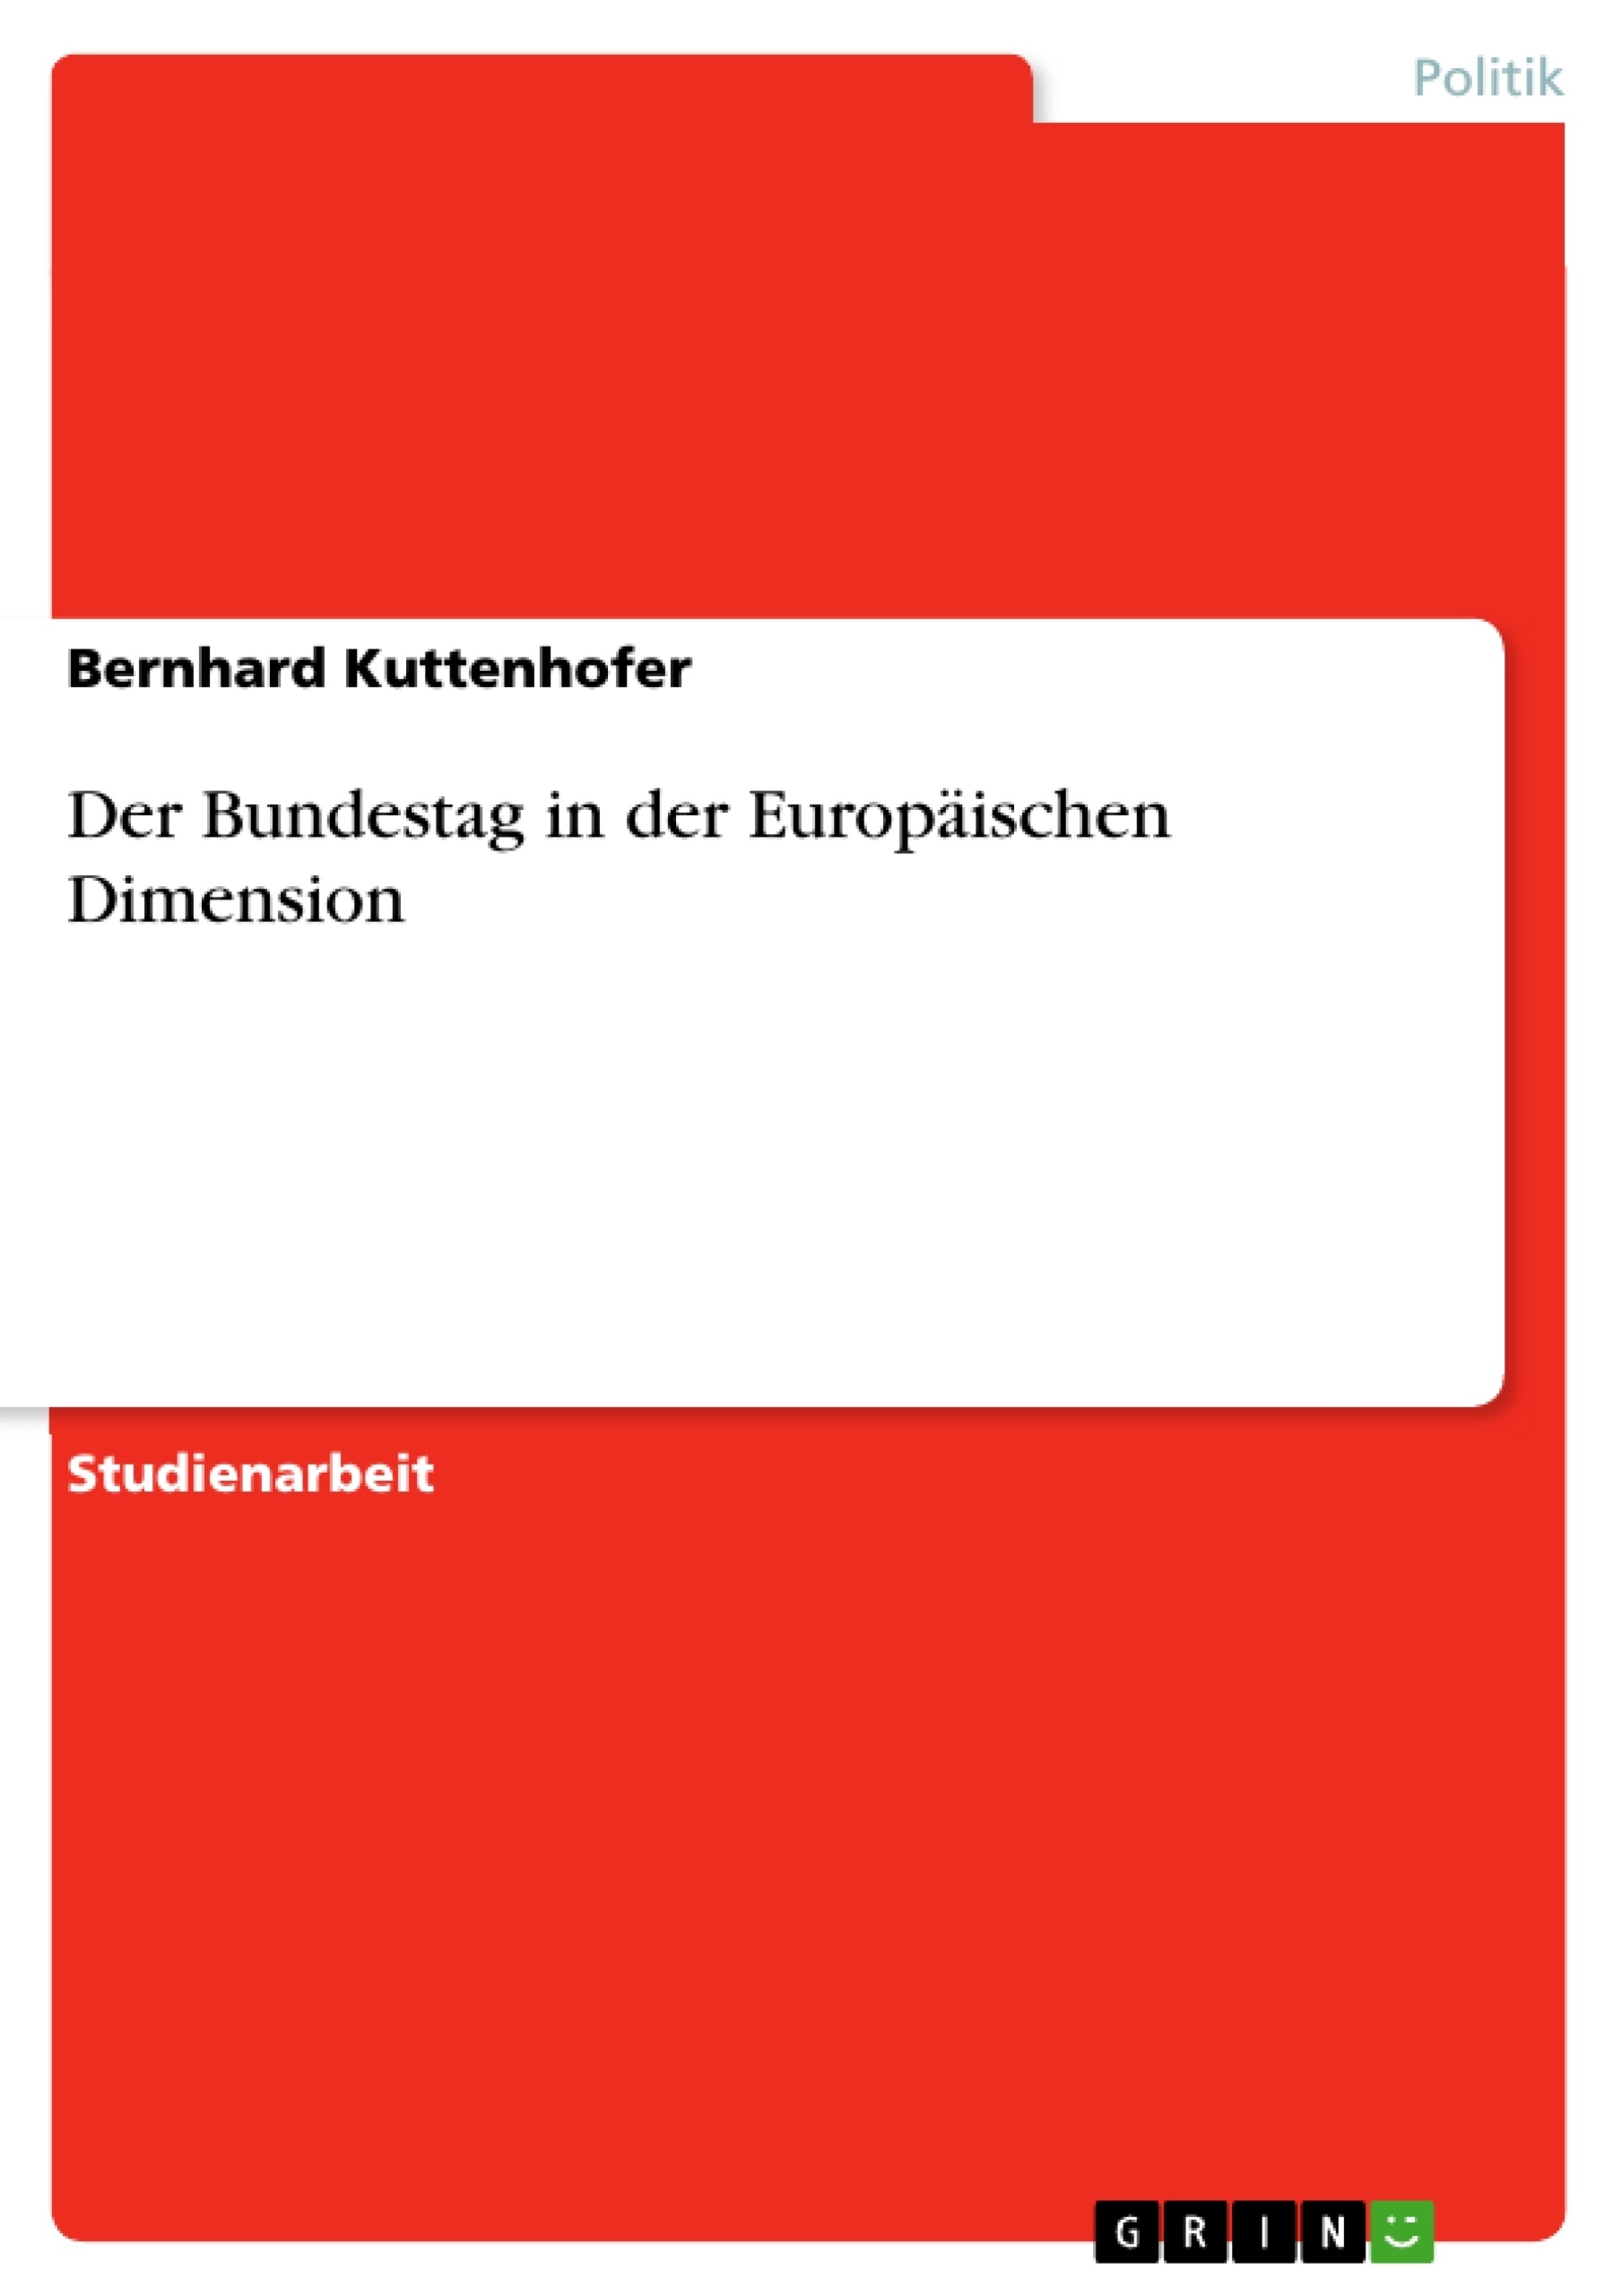 Titre: Der Bundestag in der Europäischen Dimension